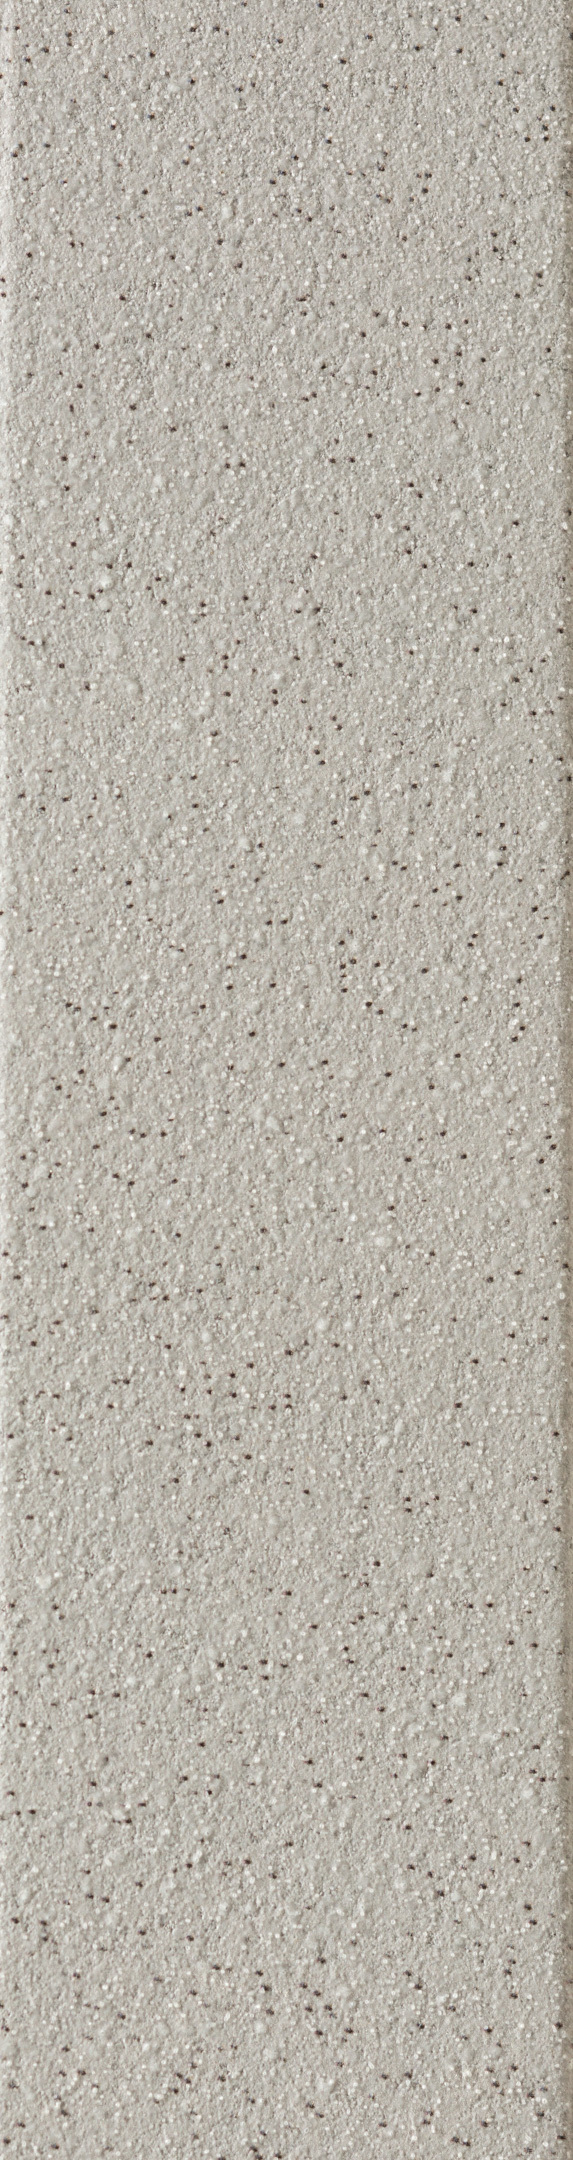 фото Клинкерная плитка керамин мичиган 7 белая 24,5х6,5 см (34 шт.=0,54 кв.м)